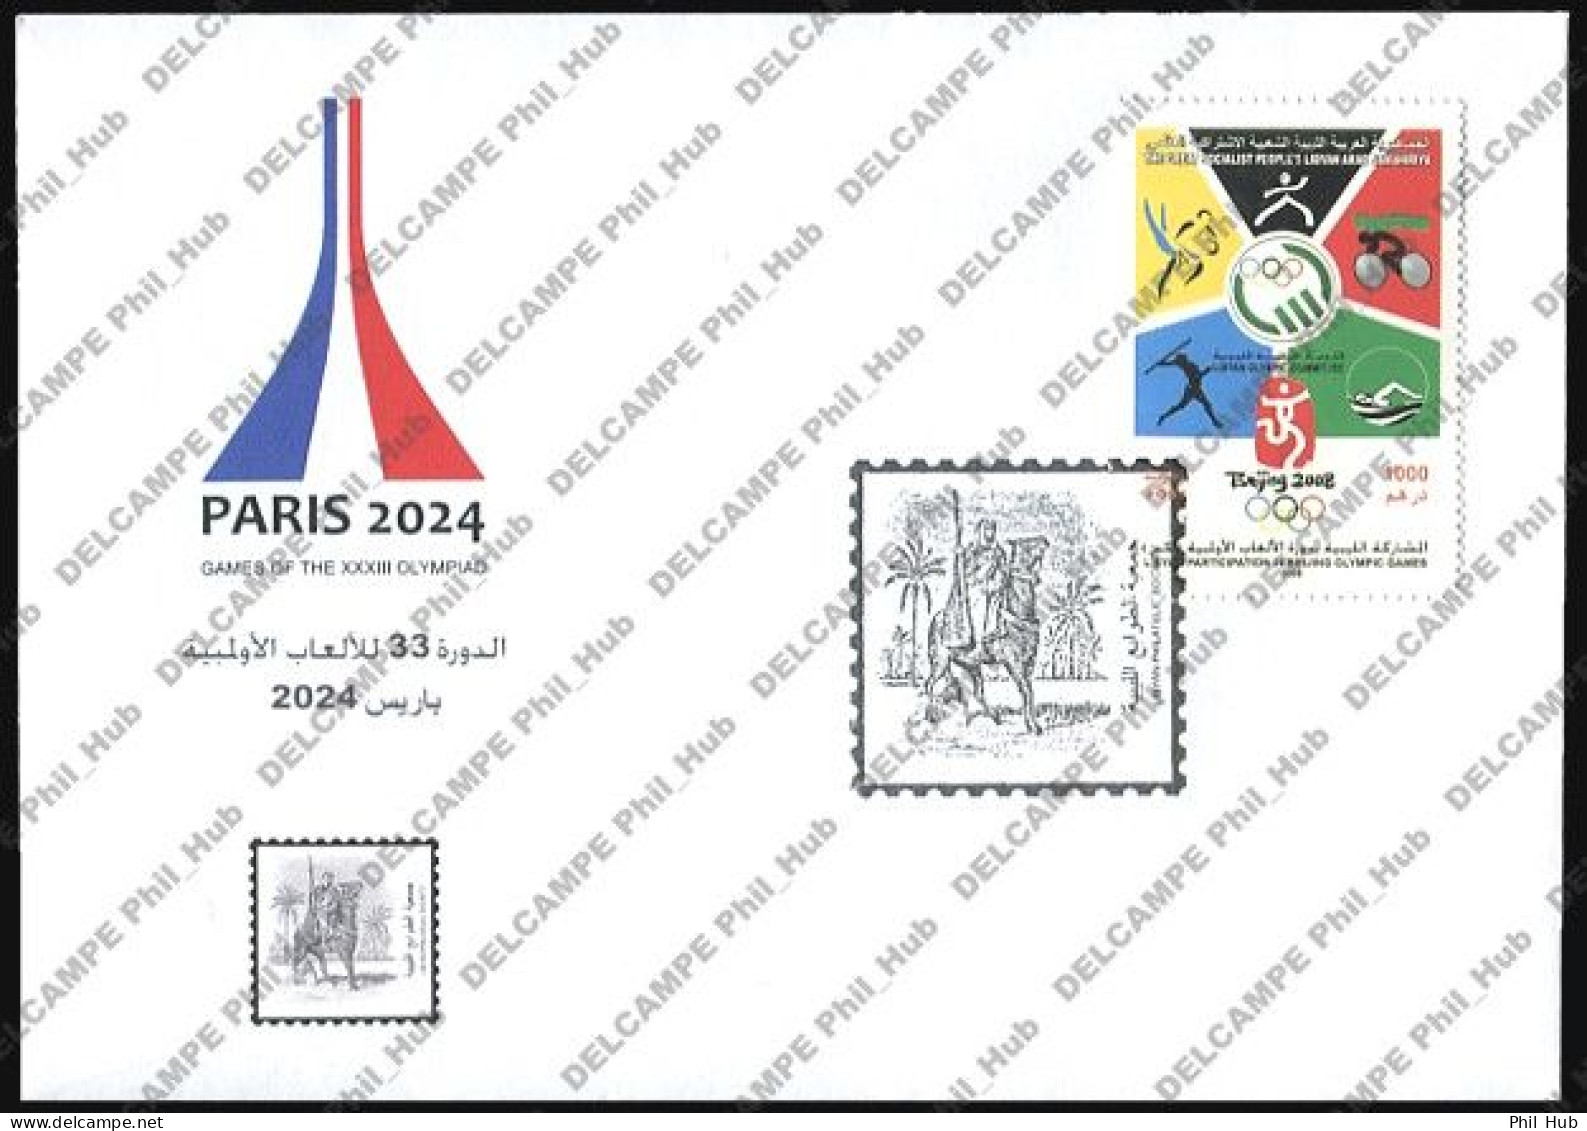 2024 PARIS FRANCE OLYMPICS (Libya Special Olympic Cover - #3) - Eté 2024 : Paris